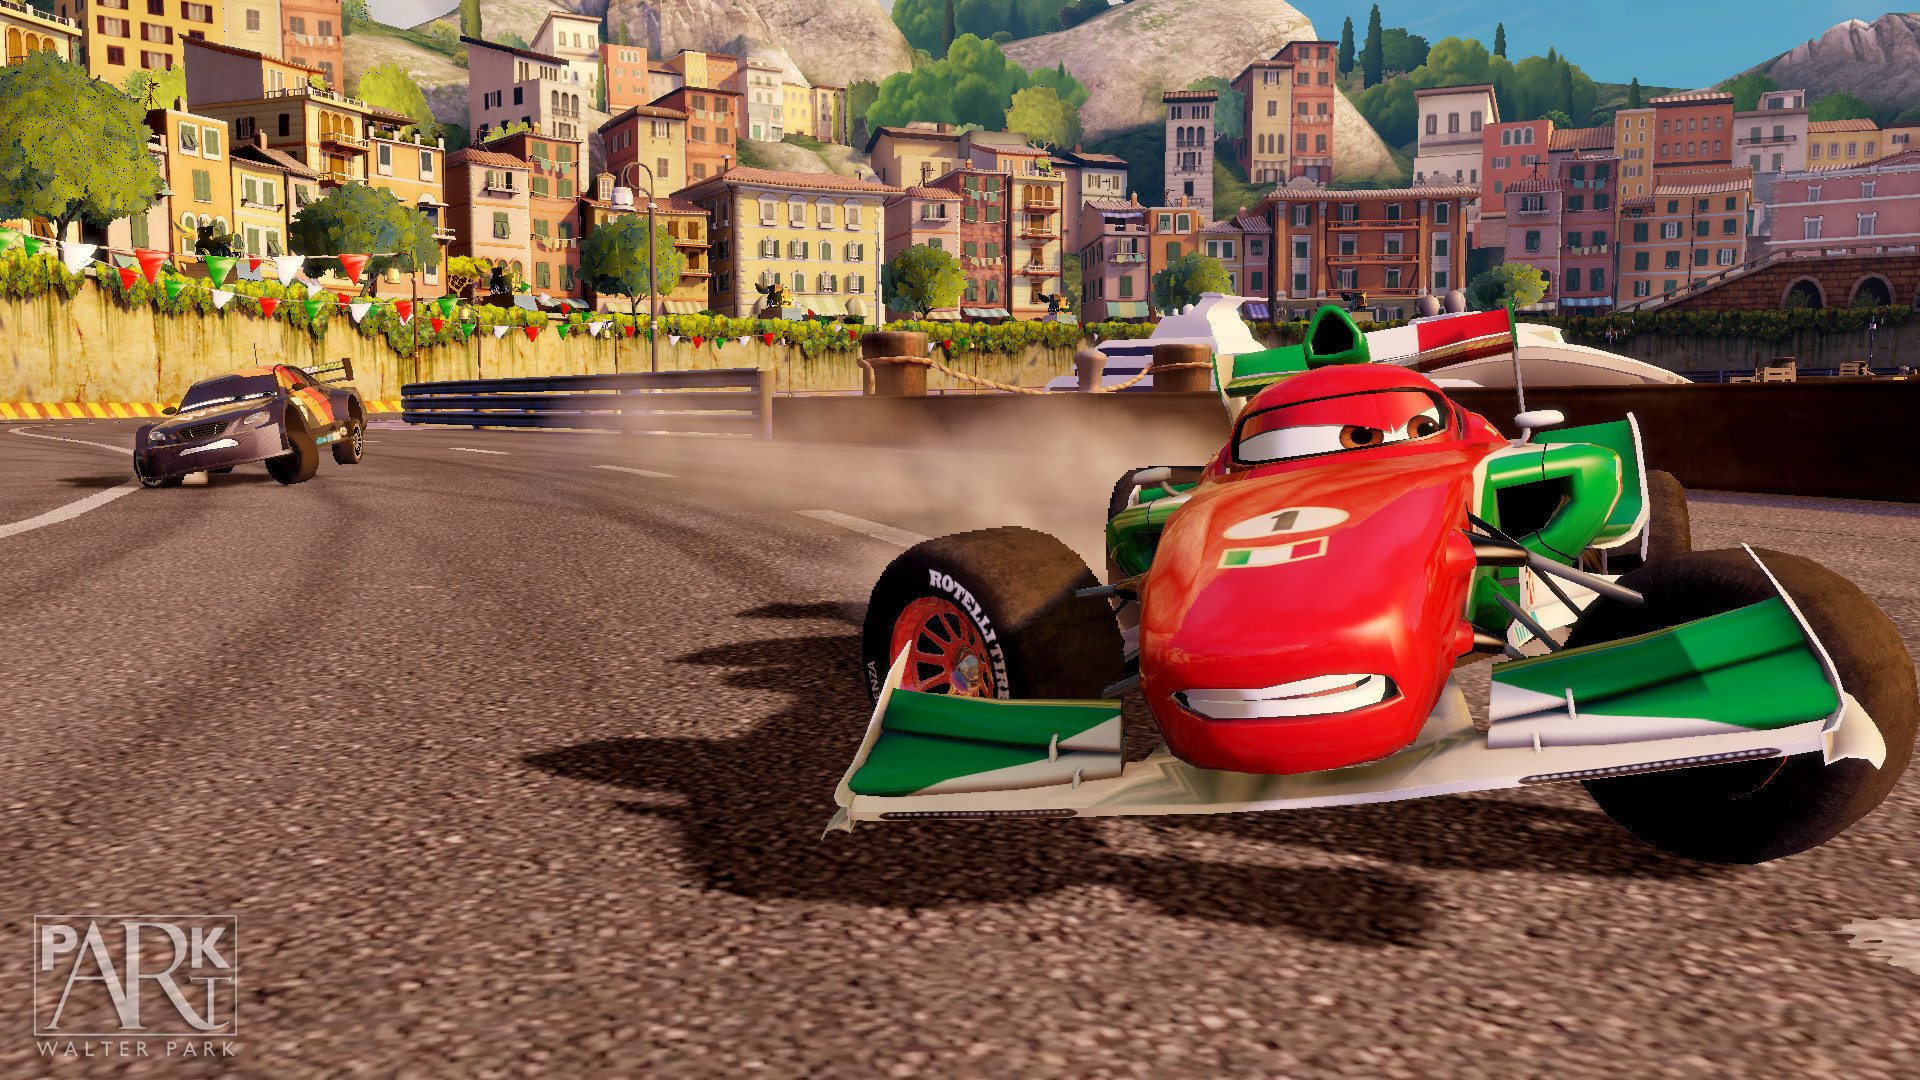 Гонки 2 игры 3. Игра Disney Pixar cars 2. Cars 2 Xbox 360. Тачки / cars: the videogame. Тачки 2 хбокс 360.